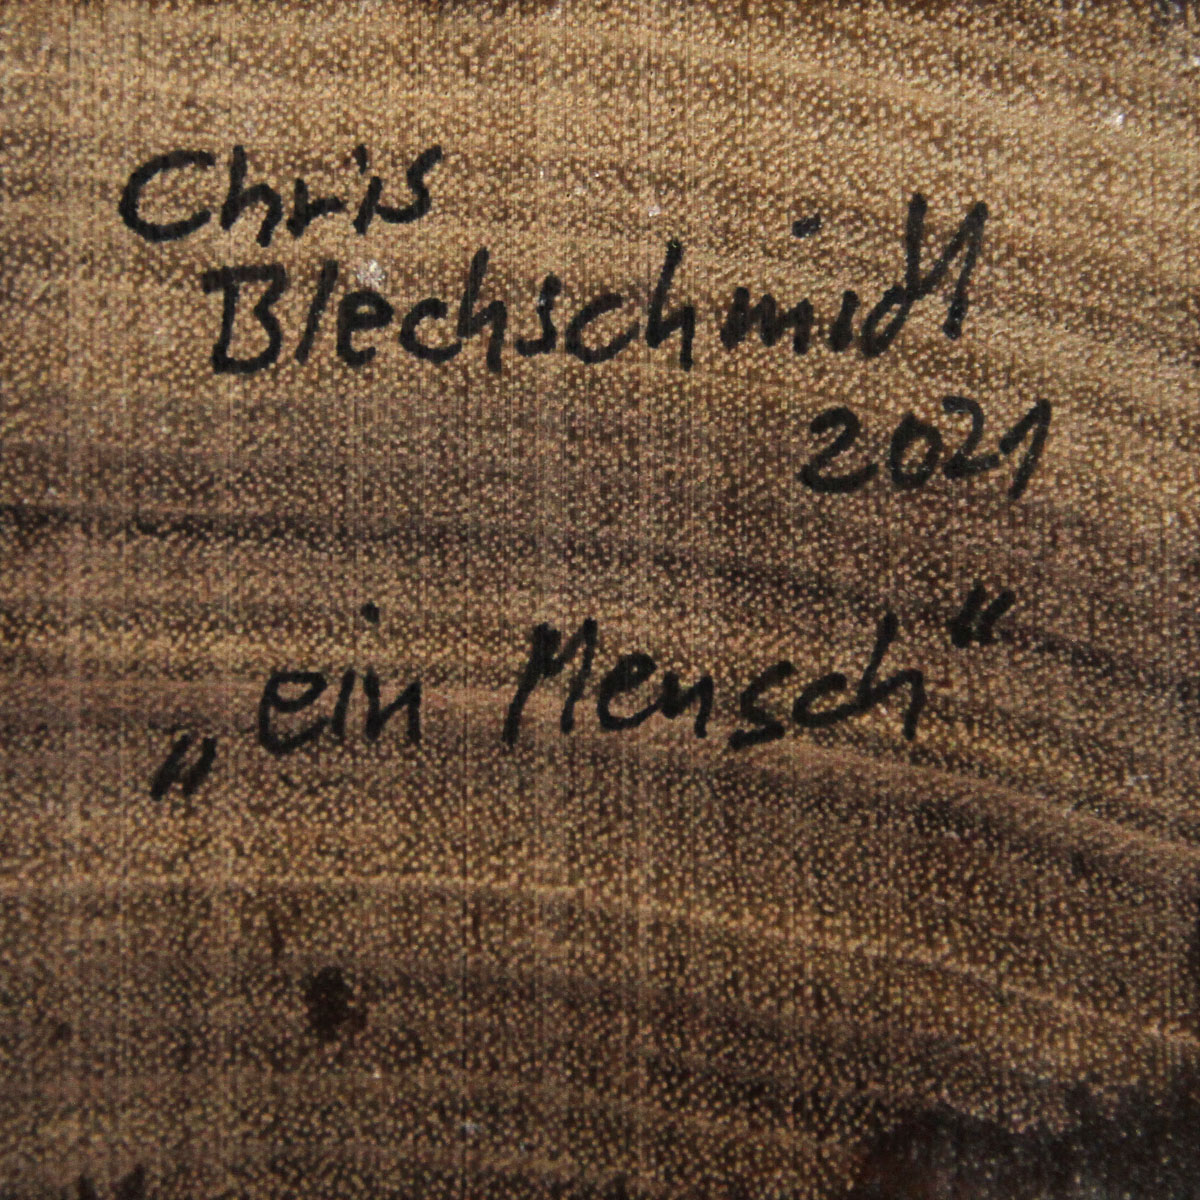 C. Blechschmidt: "Ein Mensch", zeitgenössische Plastik, Original/Unikat